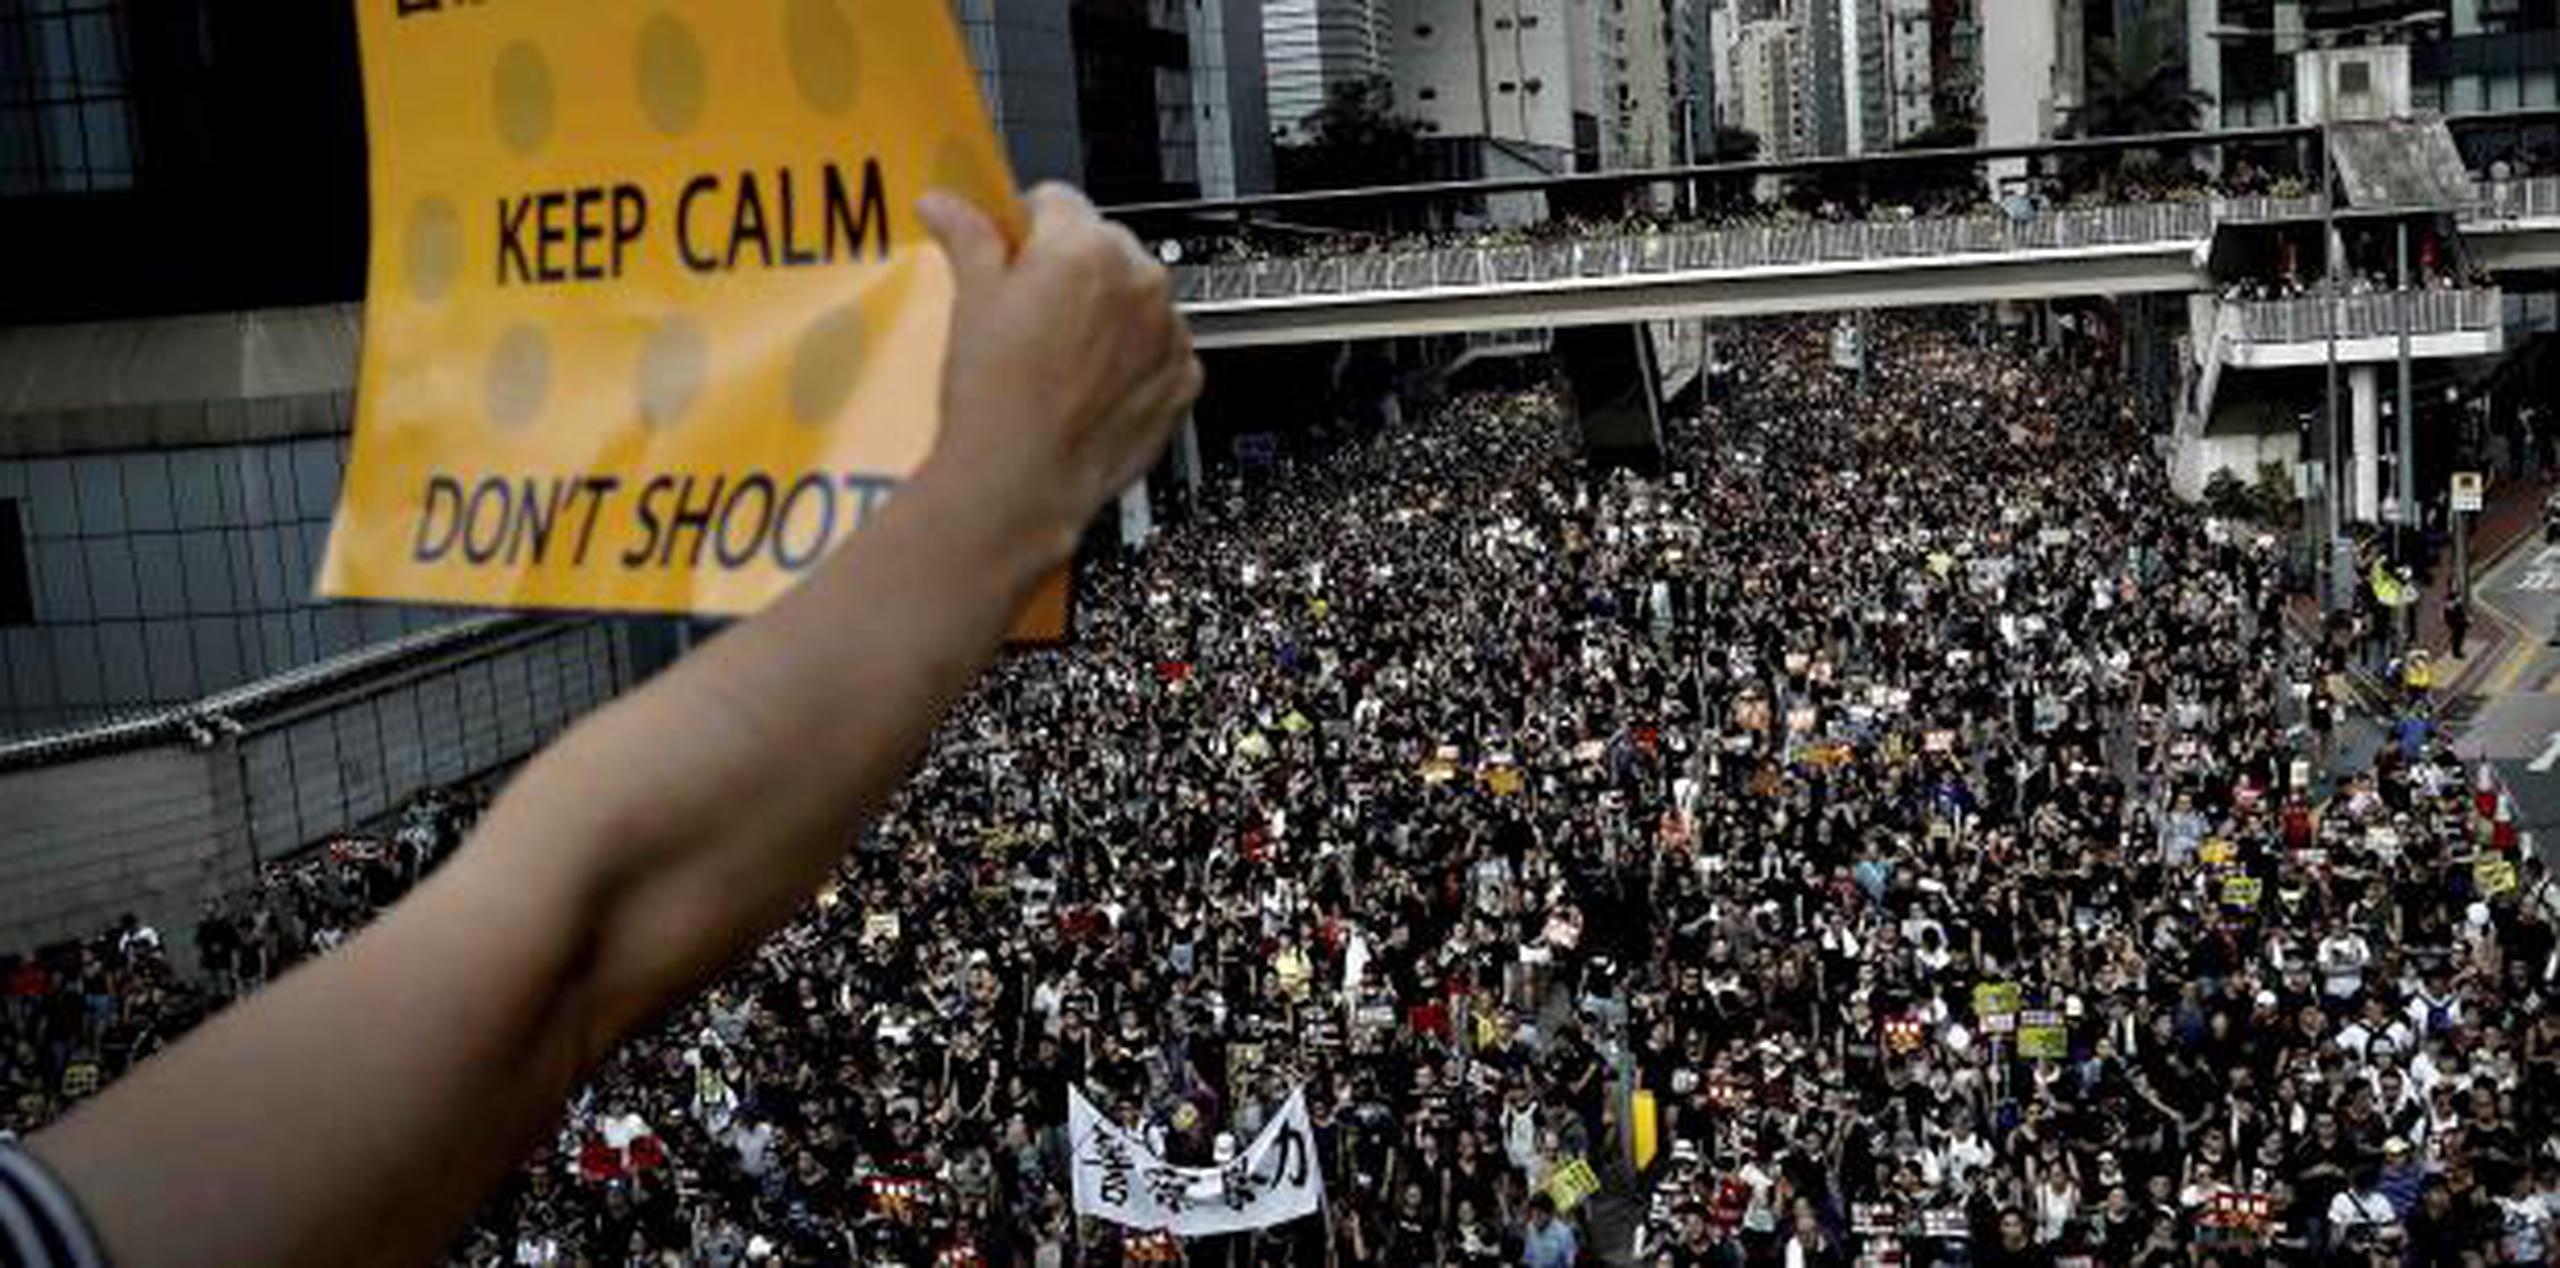 Dos marchas en junio contra la propuesta de ley atrajeron a más de un millón de personas, según los cálculos de los organizadores. (AP)

